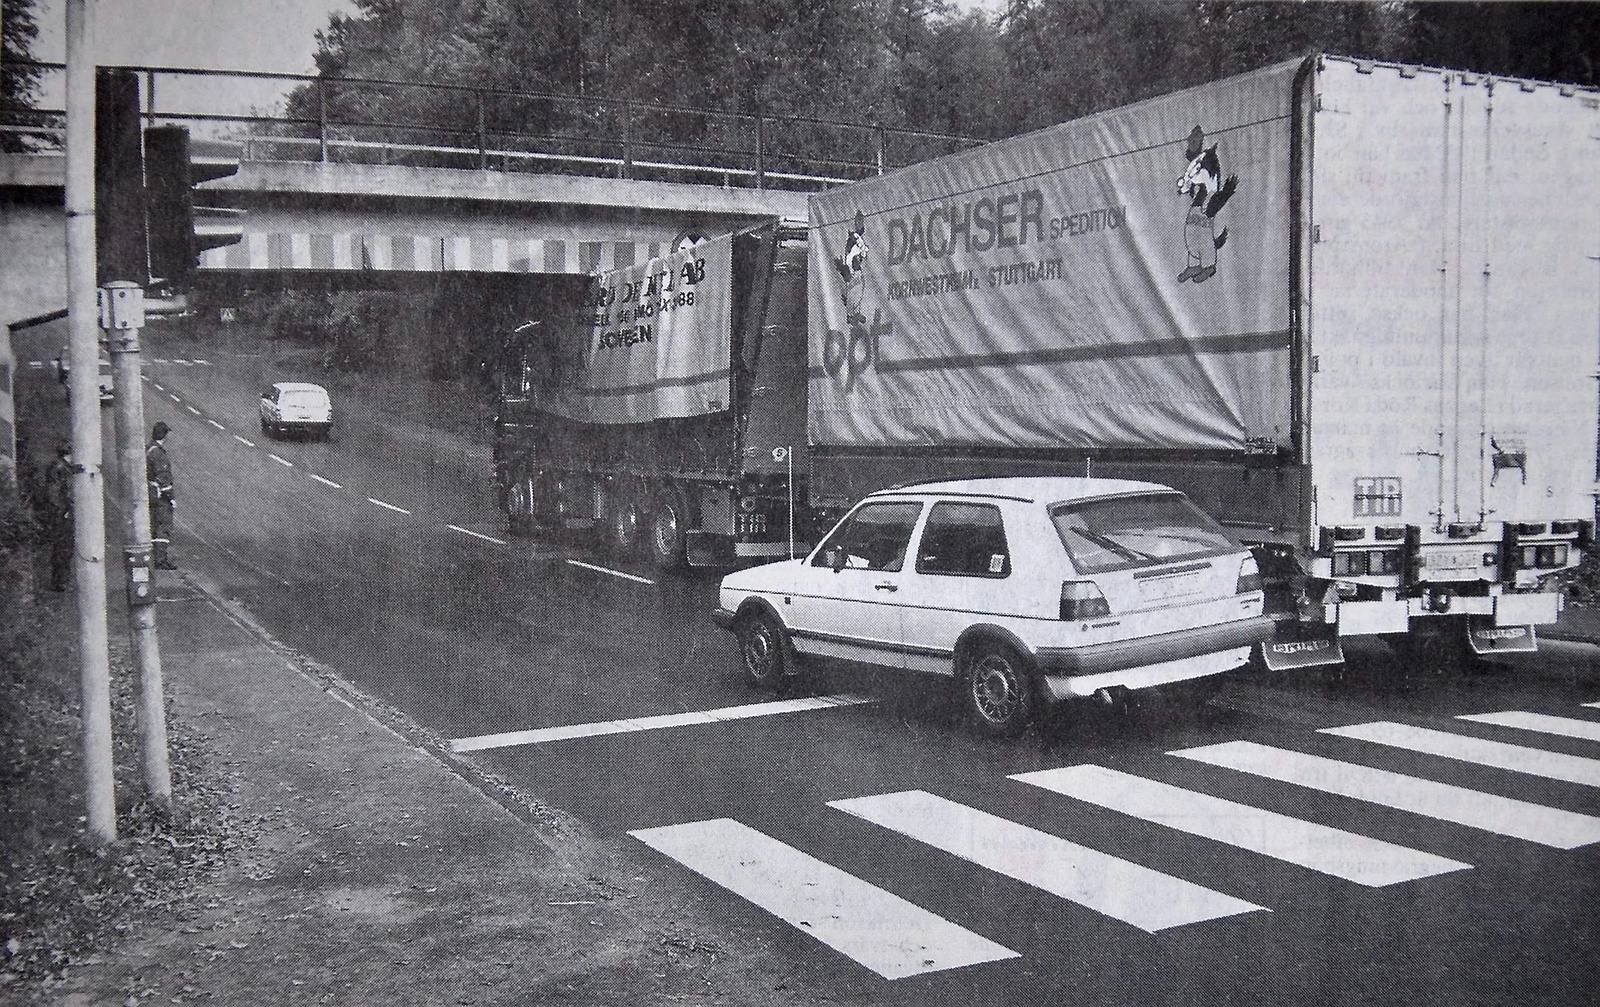 Trots vägskyltar som påminner om brohöjden, försökte de övningskörande poliserna köra under järnvägsviadukten i Tyringe.
Arkiv: Jonas Karlsson